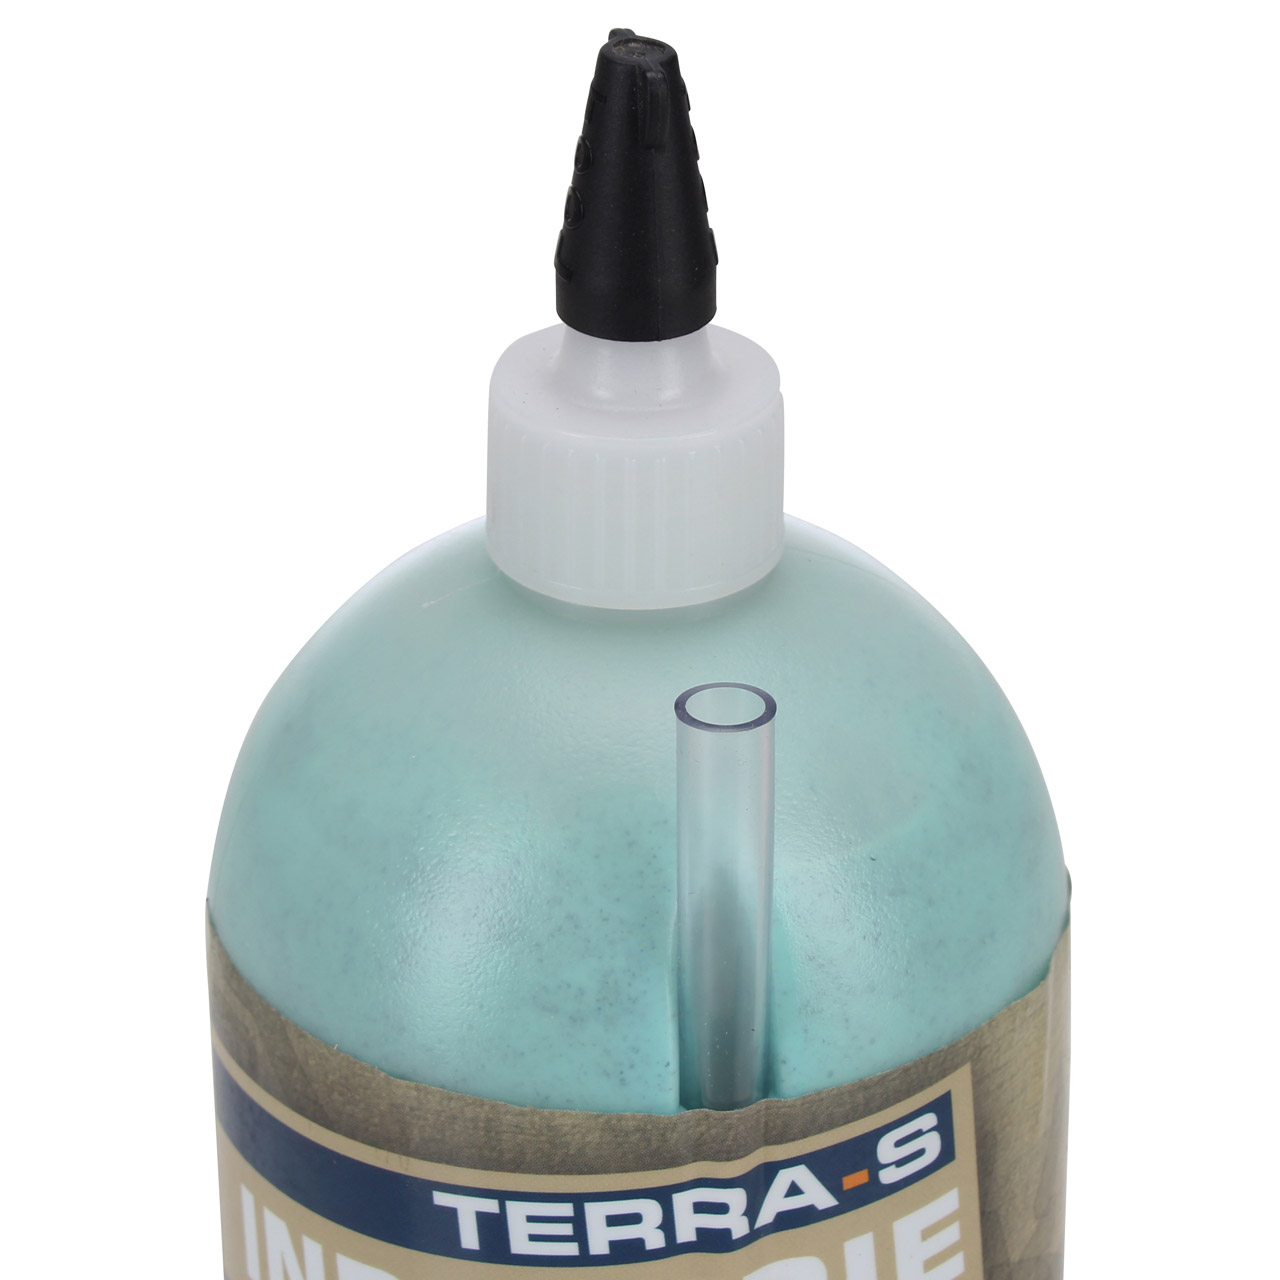 TERRA S 1004000 Industrie Reifendichtmittel Reifendichtgel Dichtmittel bis 80km/h 950ml